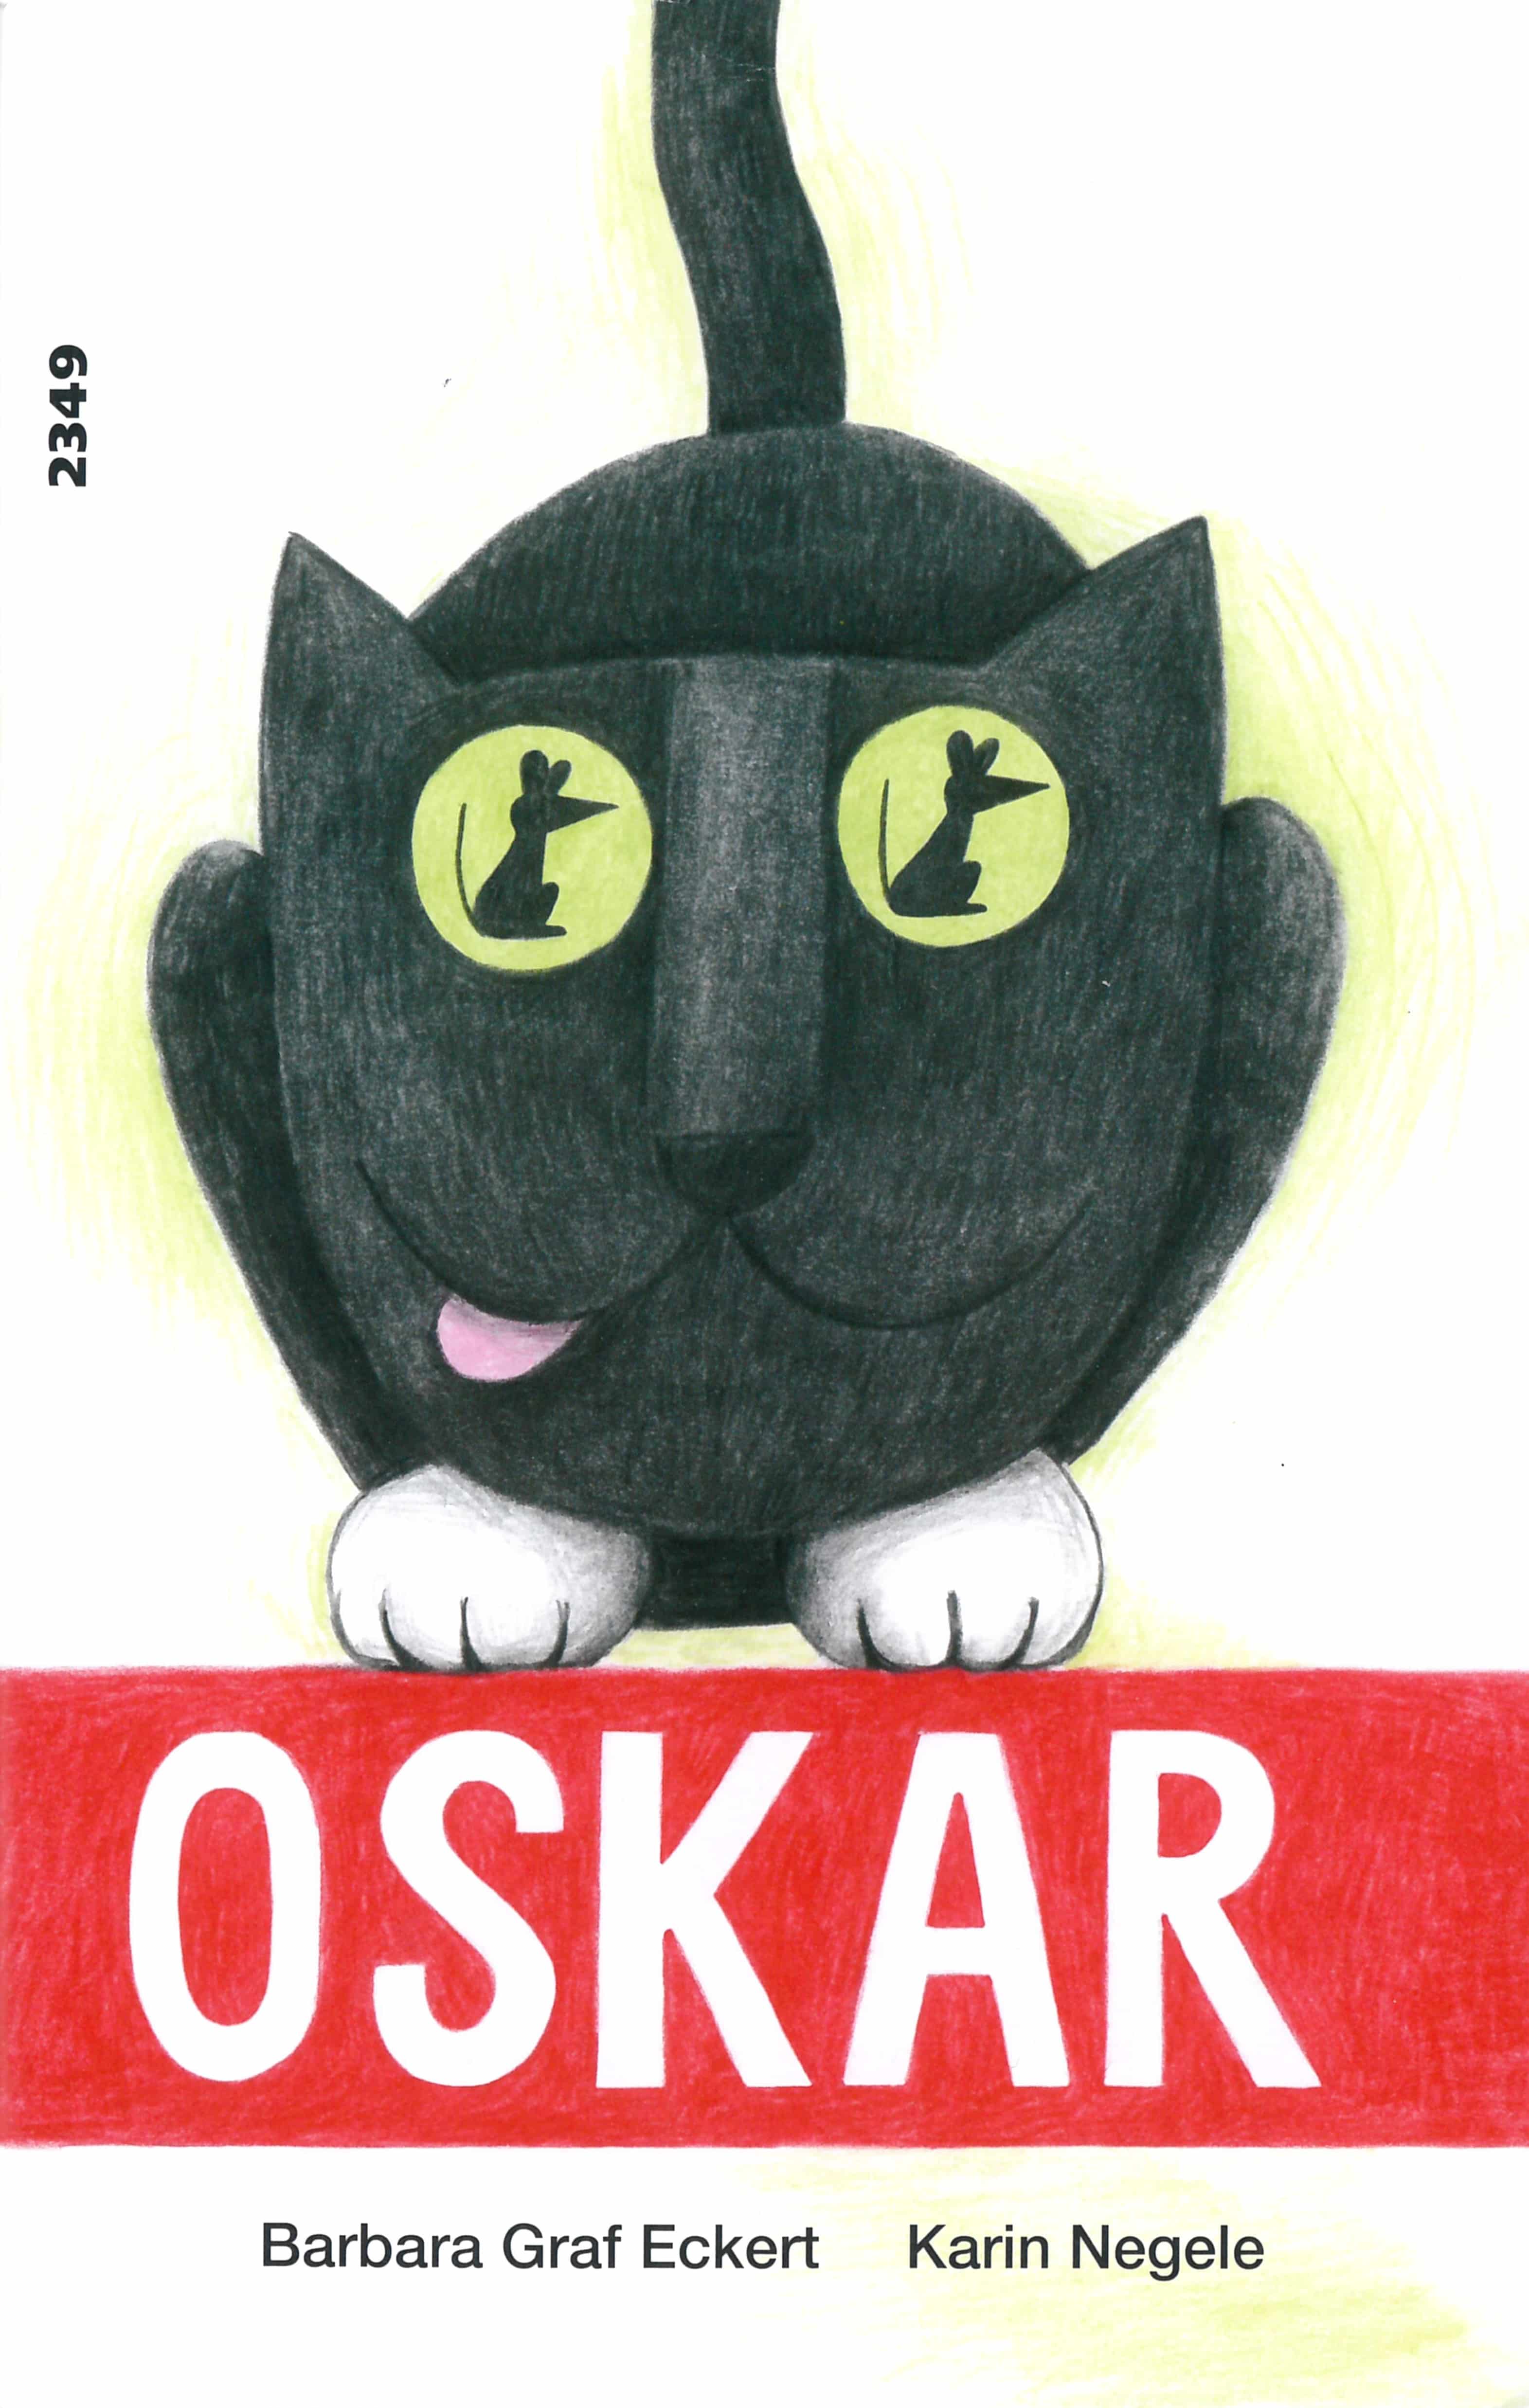 Oskar, ein Kinderbuch von Barbara Graf Eckert, Illustration von Karin Negele, SJW Verlag, Zahlengeschichte